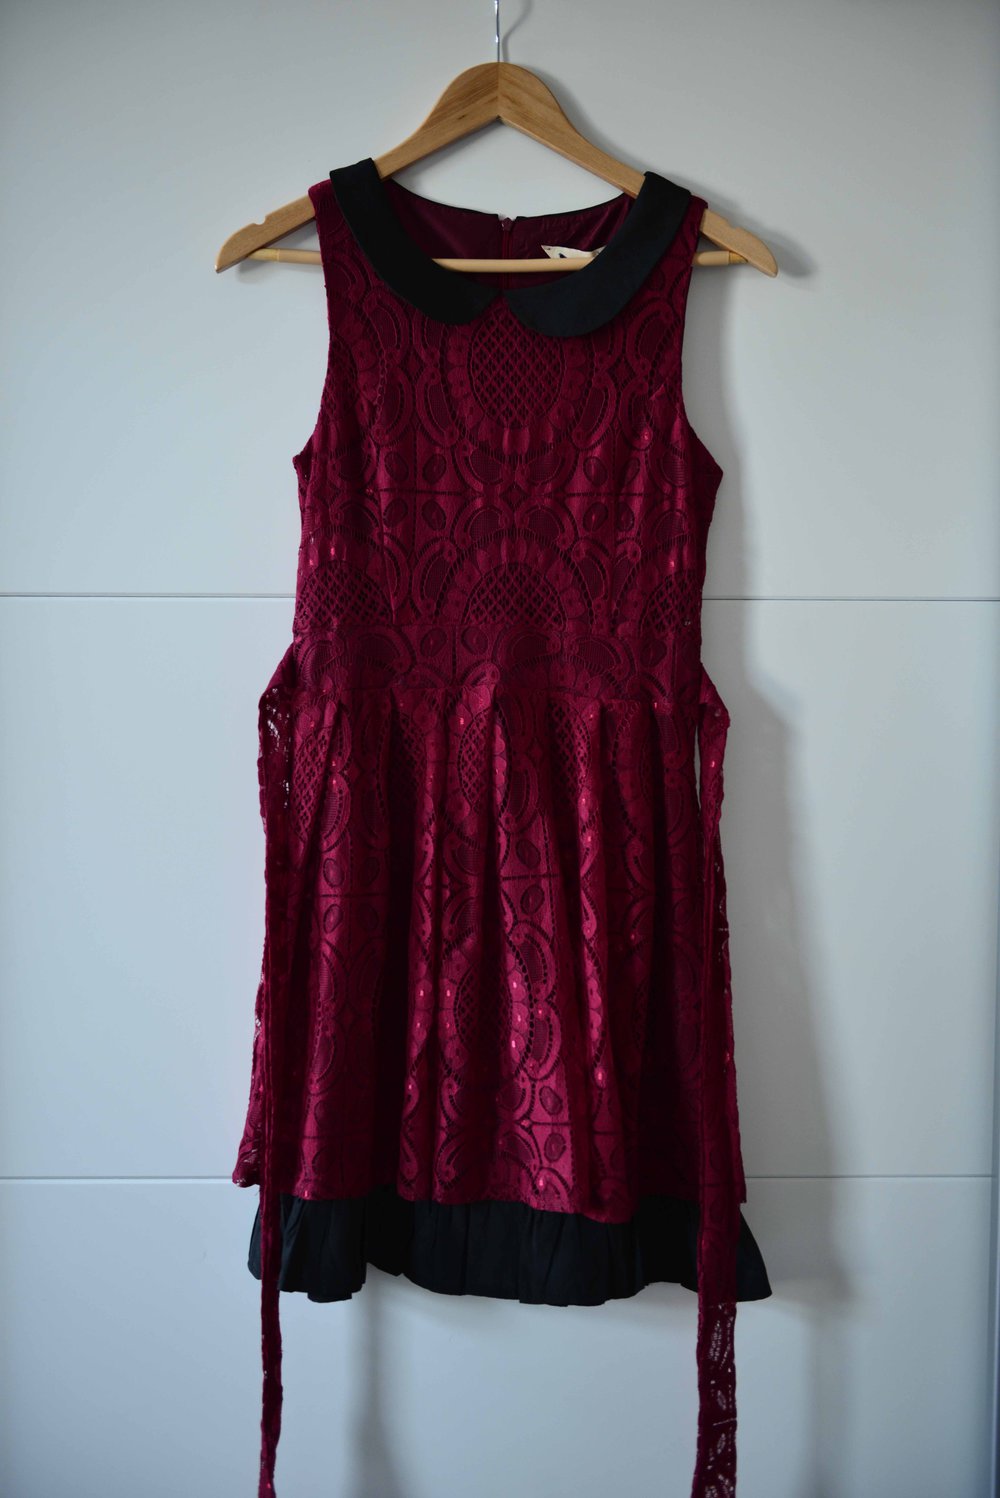 Yumi Dunkelrotes Kleid Aus Spitze Vintage Kleiderkorb De